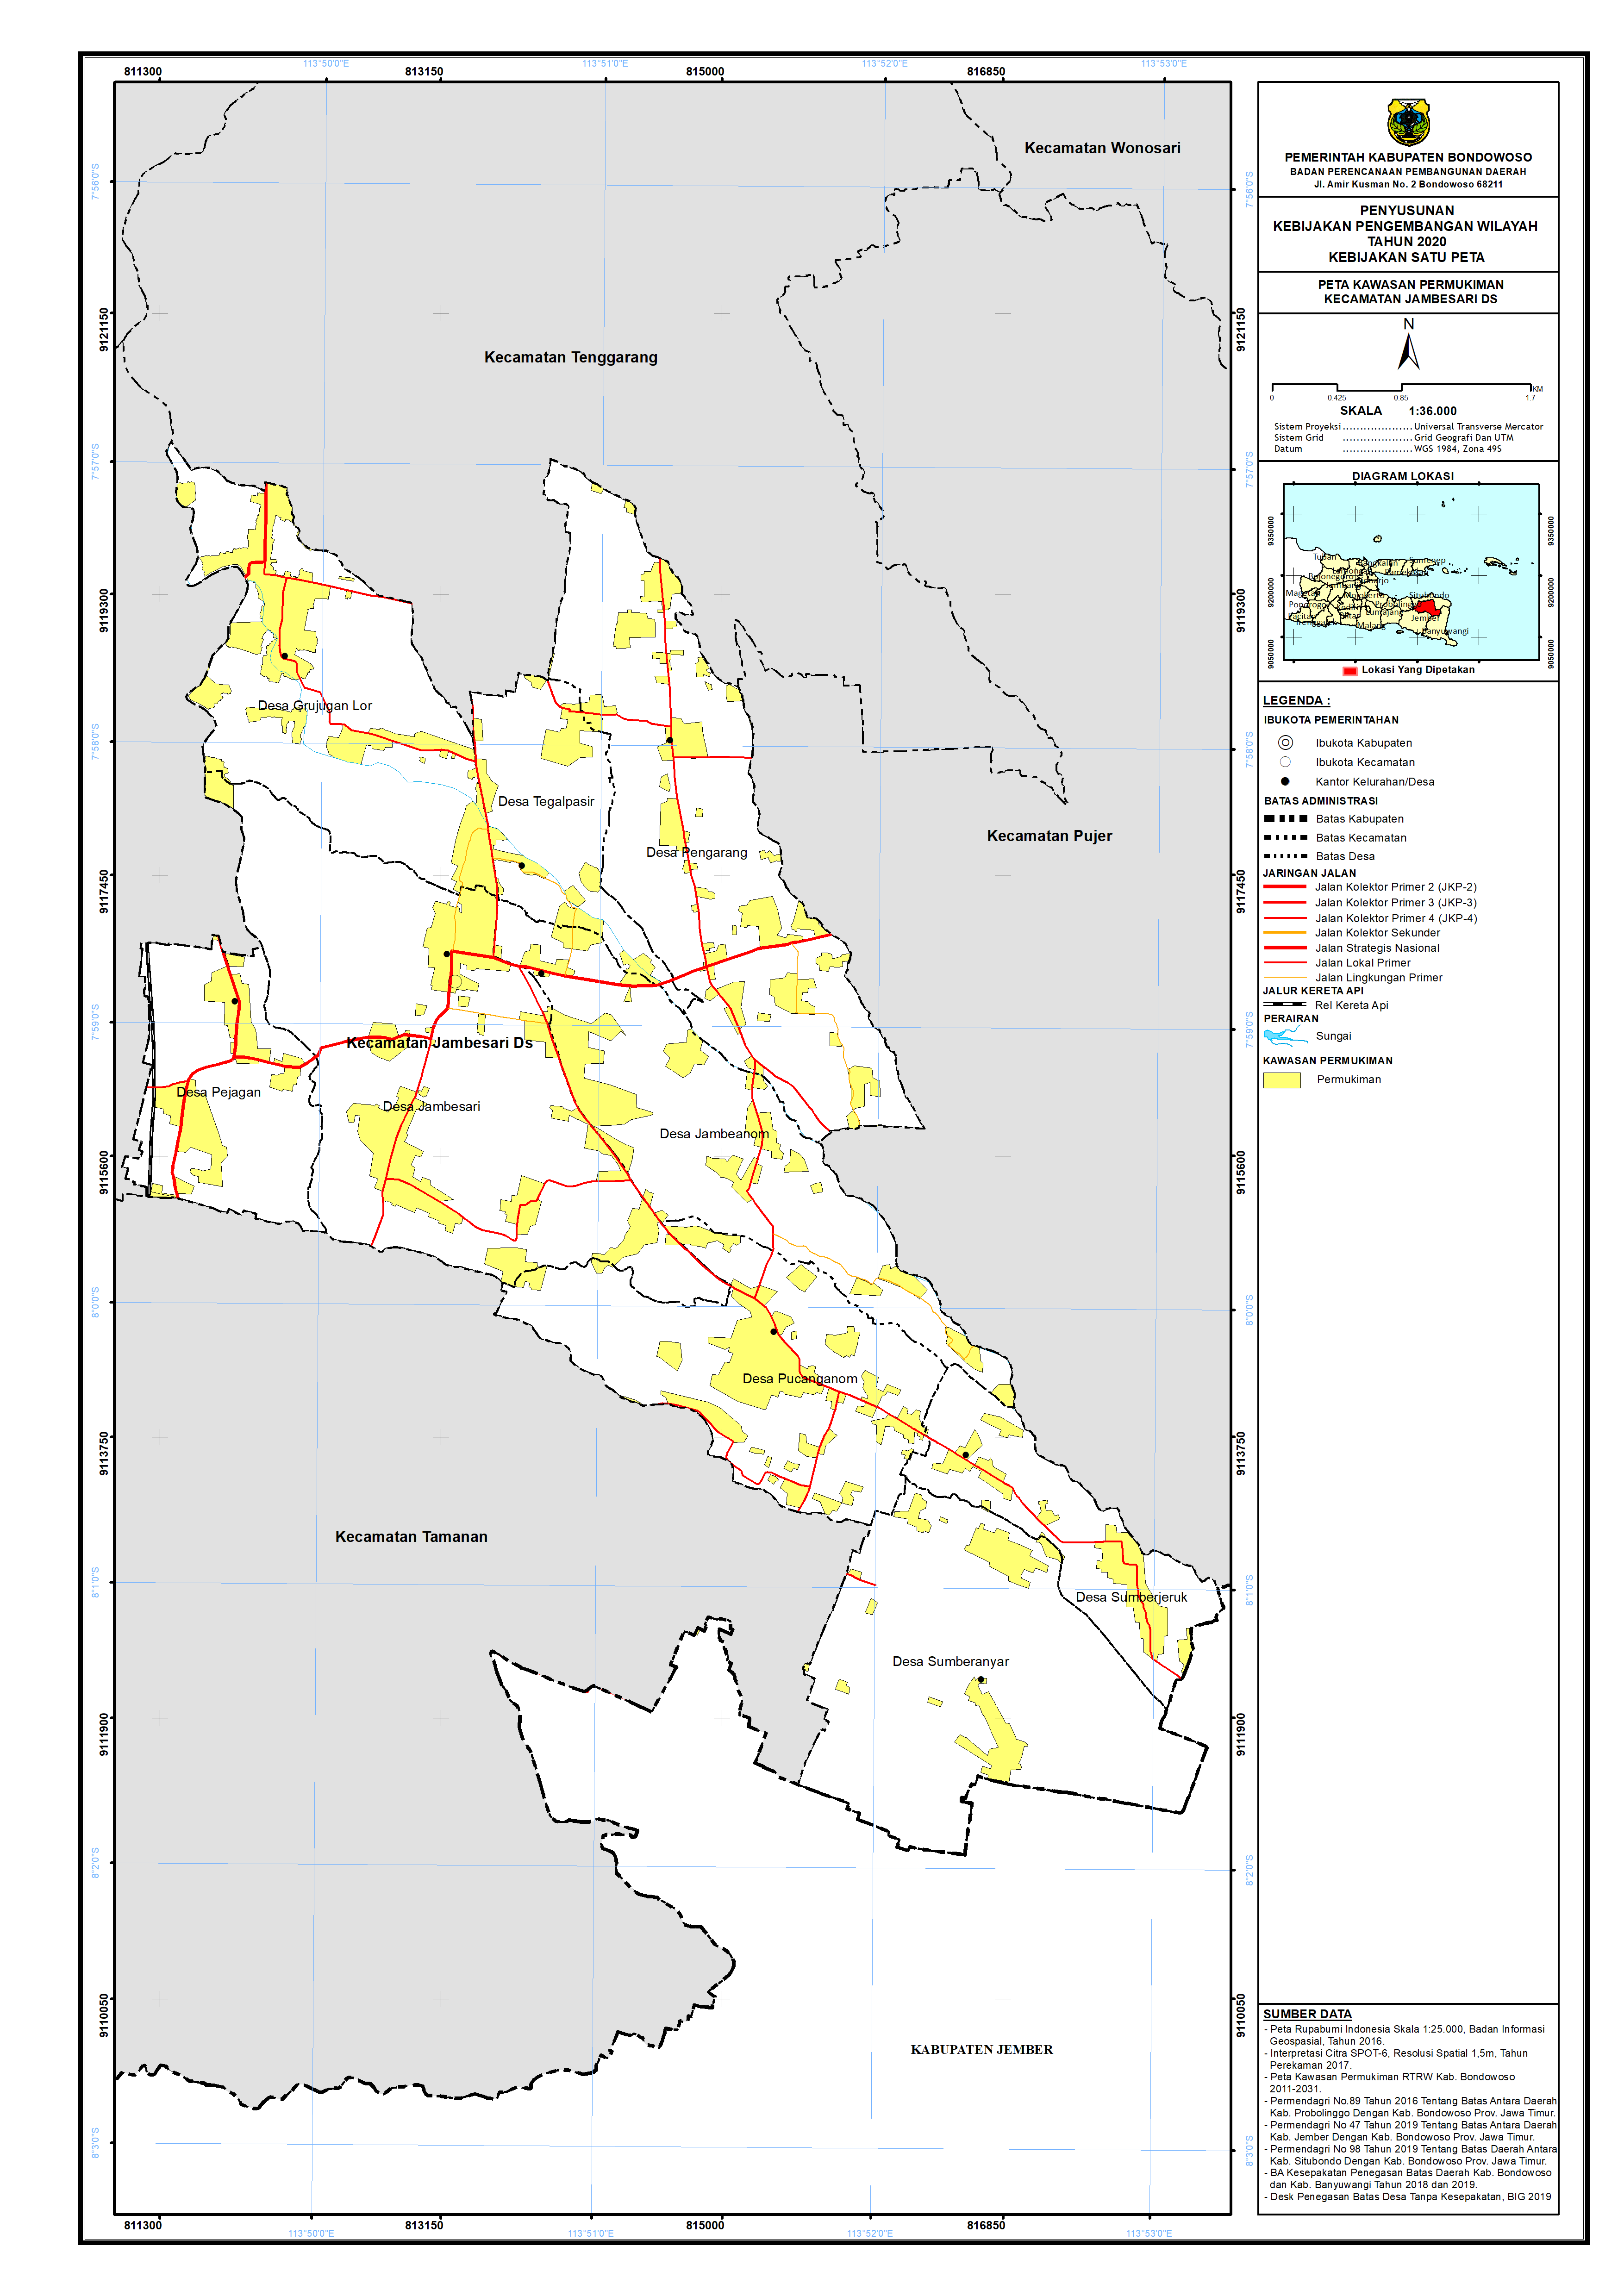 Peta Kawasan Permukiman Kecamatan Jambesari DS.png